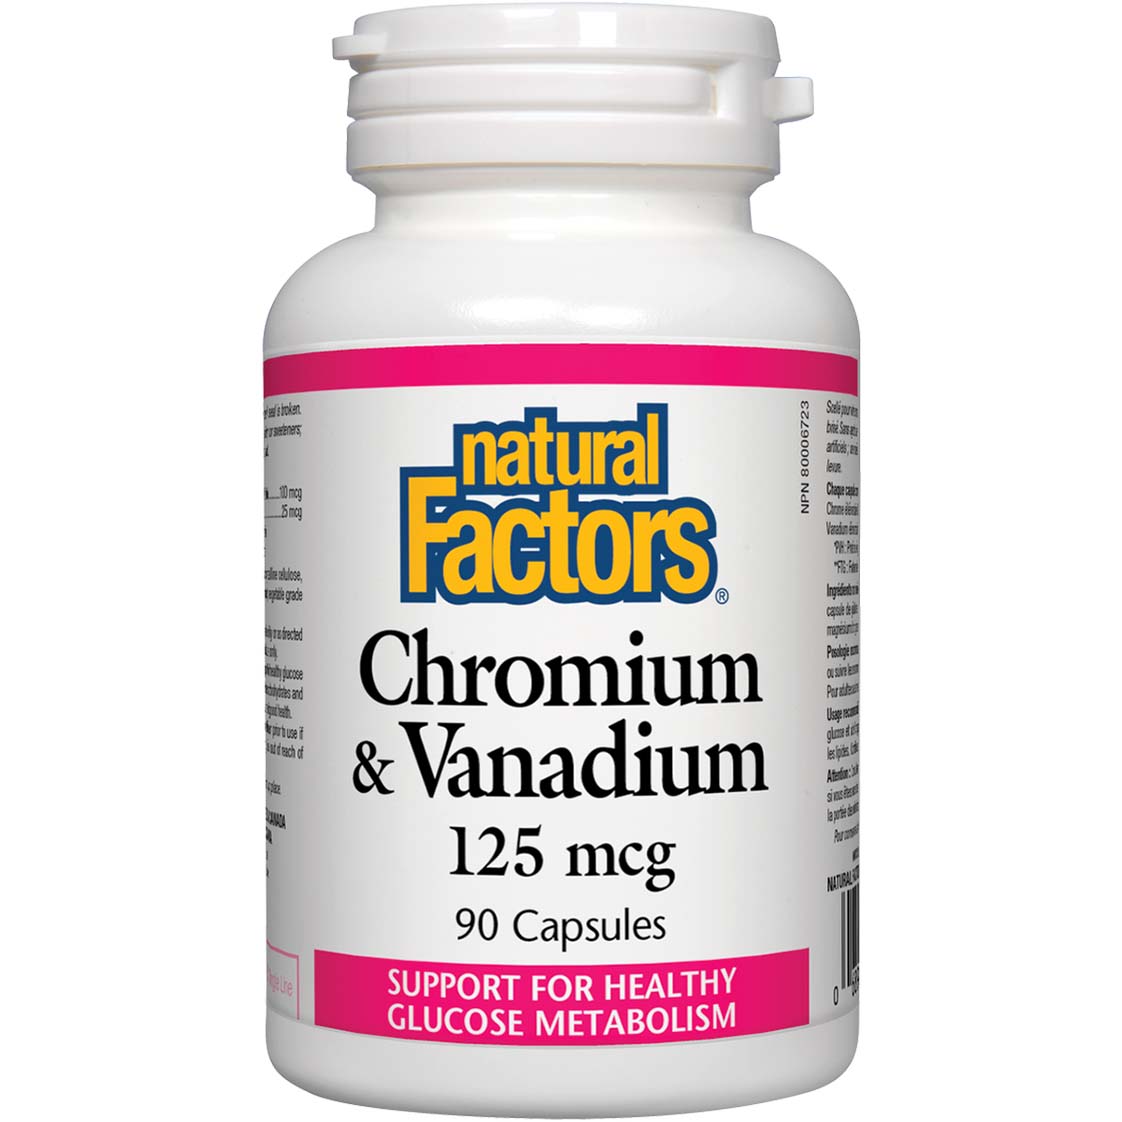 Natural Factors Chromium & Vanadium, 125 mcg, 90 Capsules